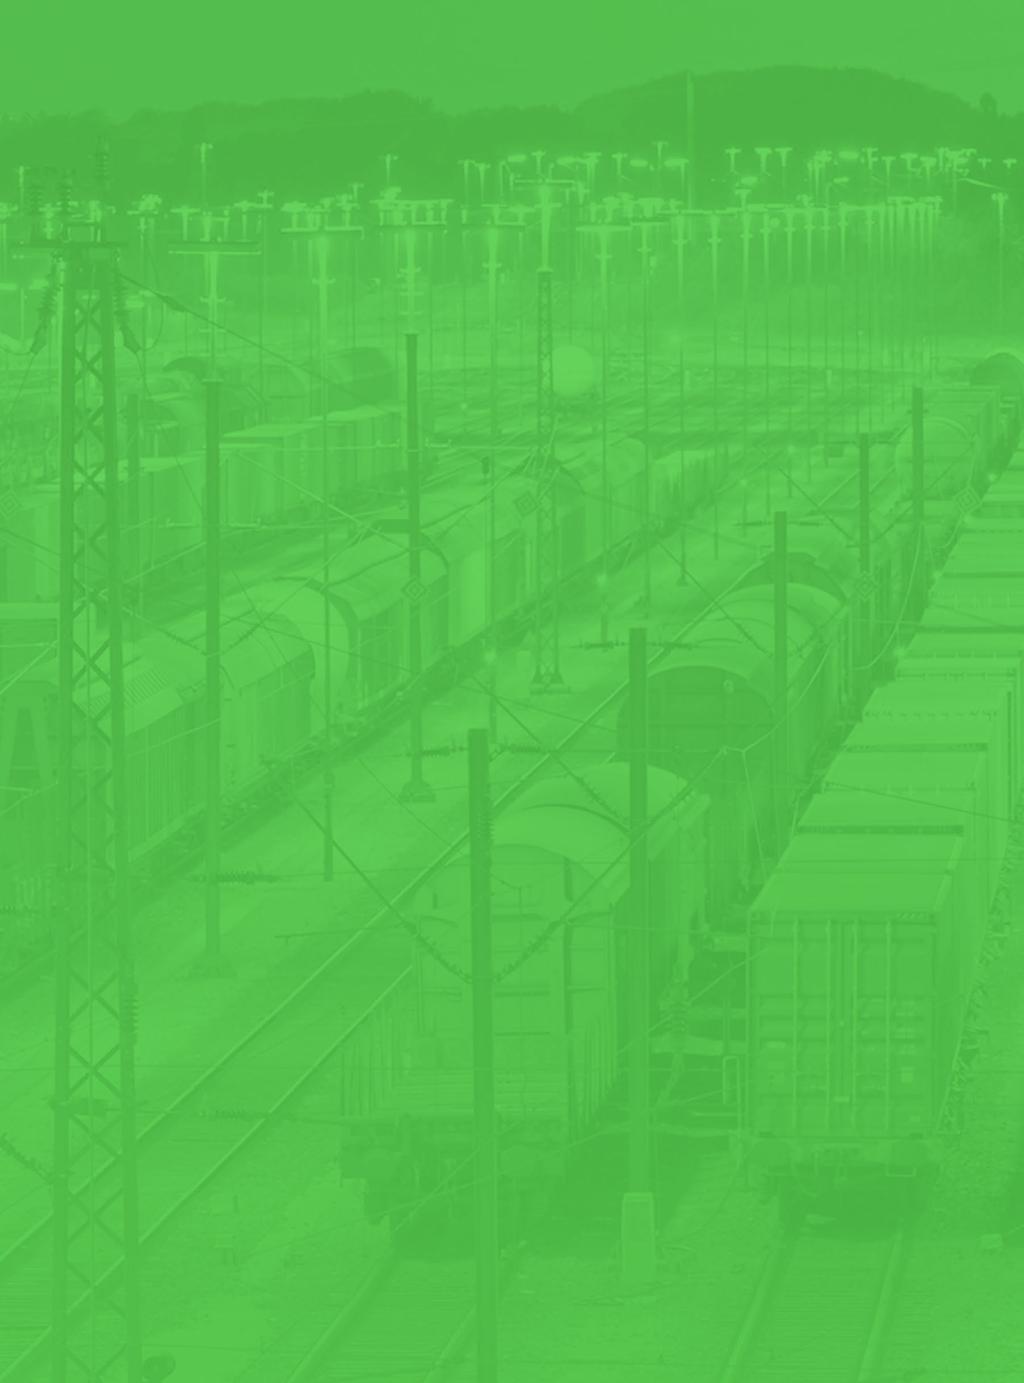 INFORMATION Information Årsstämma i Green Cargo AB kommer att hållas den 29 april 2019. Årsredovisning för Green Cargo AB samt koncernen kommer att publiceras på bolagets hemsida www.greencargo.